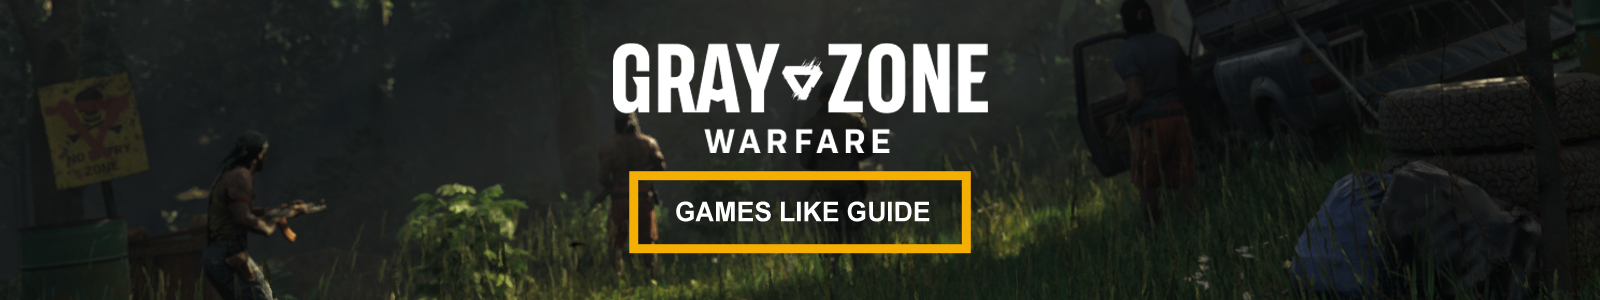 Gray Zone Warfare games like guide